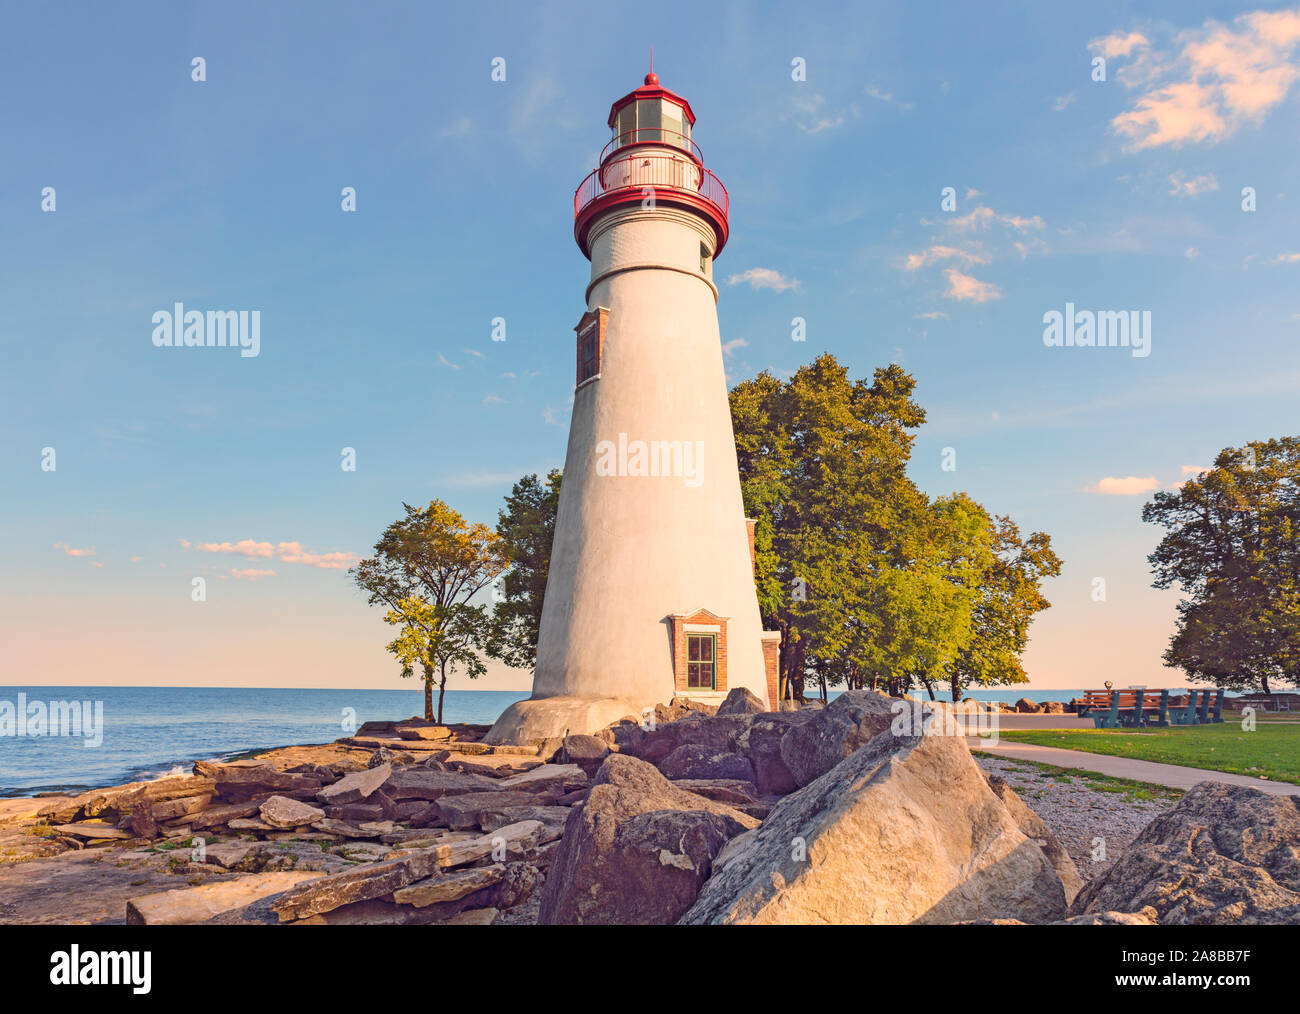 Automne spectaculaire péninsule pittoresque de Marblehead Lighthouse et sur des rives du lac Érié, Grands Lacs américains Marblehead Lighthouse Ohio State Park Banque D'Images